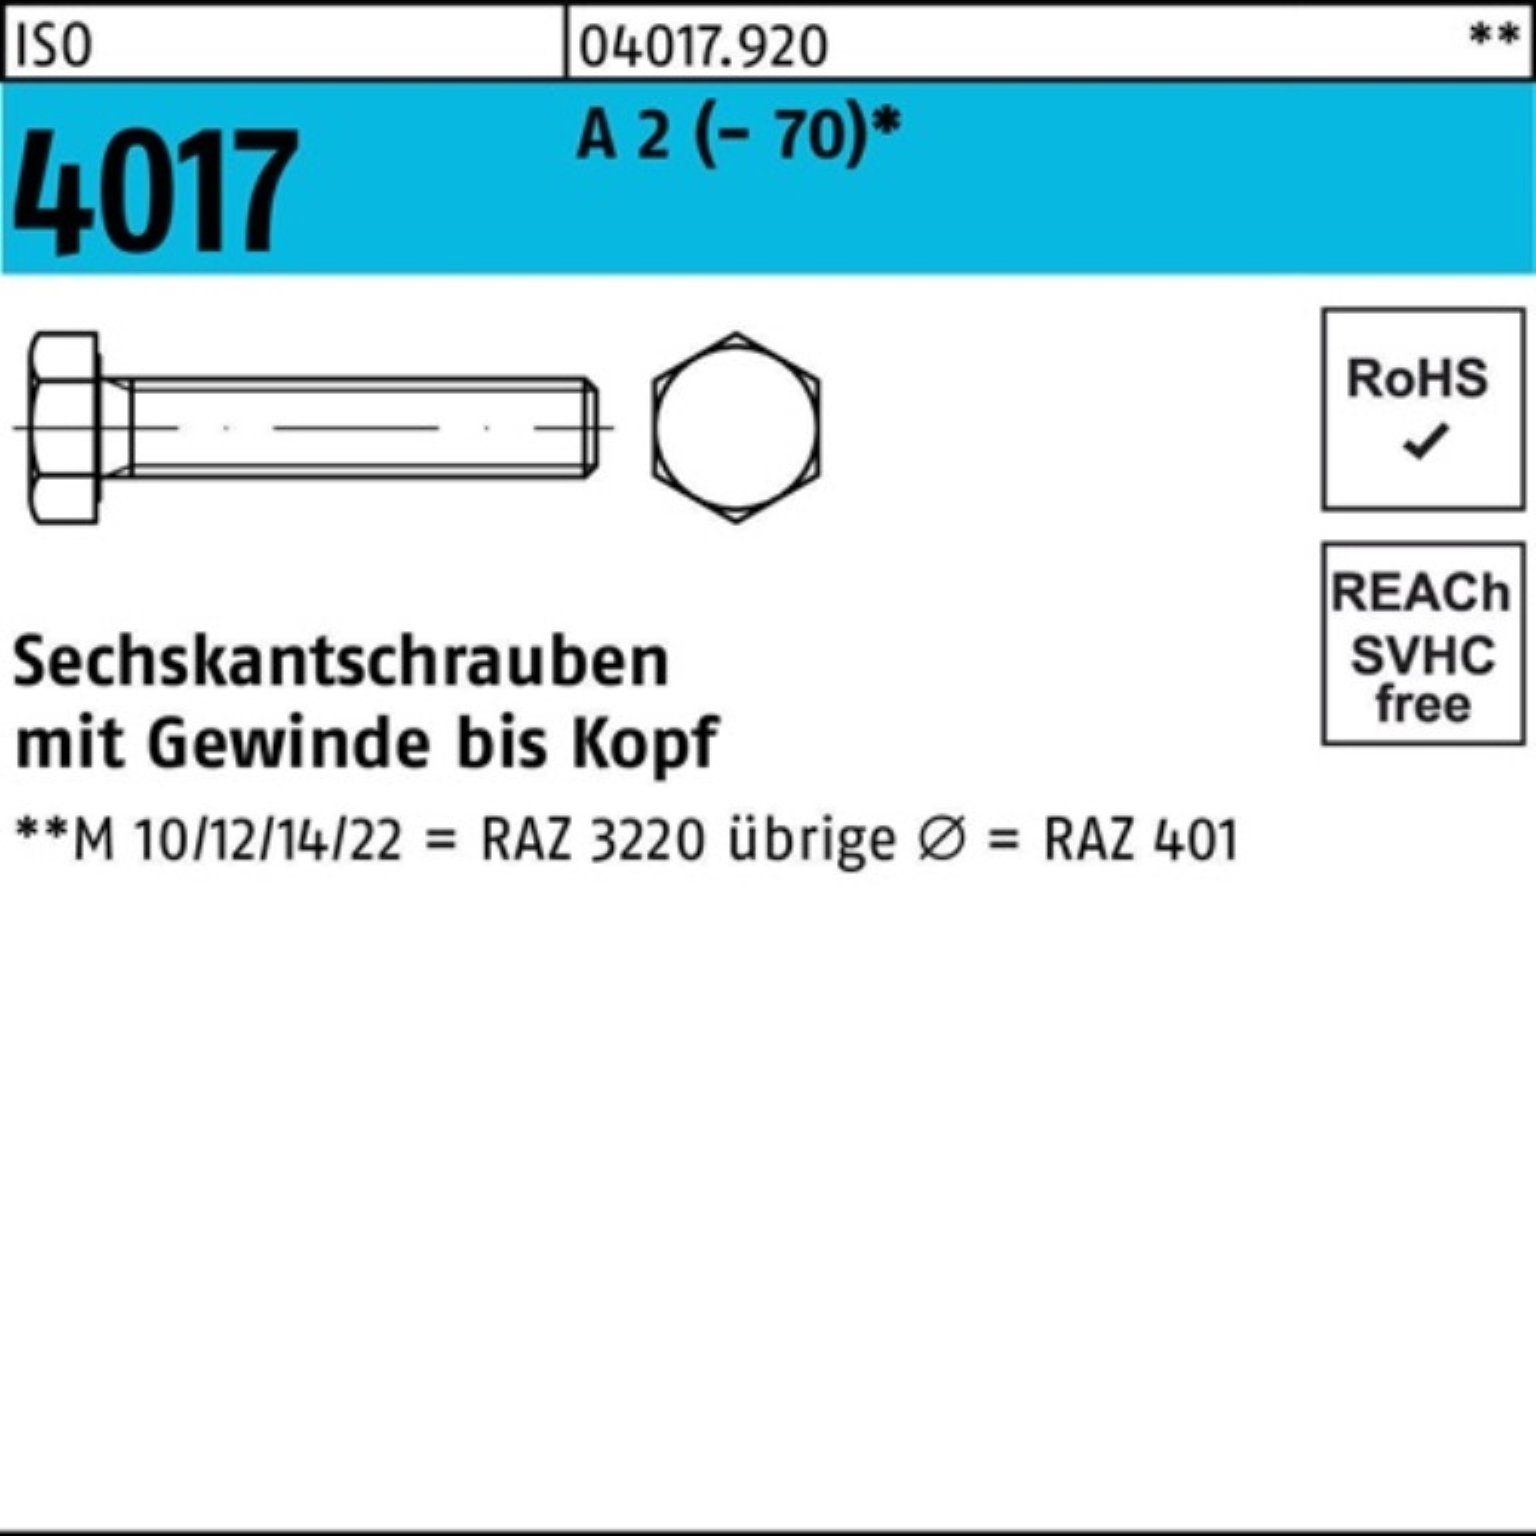 Bufab Sechskantschraube 100er Pack Sechskantschraube ISO 4017 VG M6x 8 A 2 (70) 100 Stück I